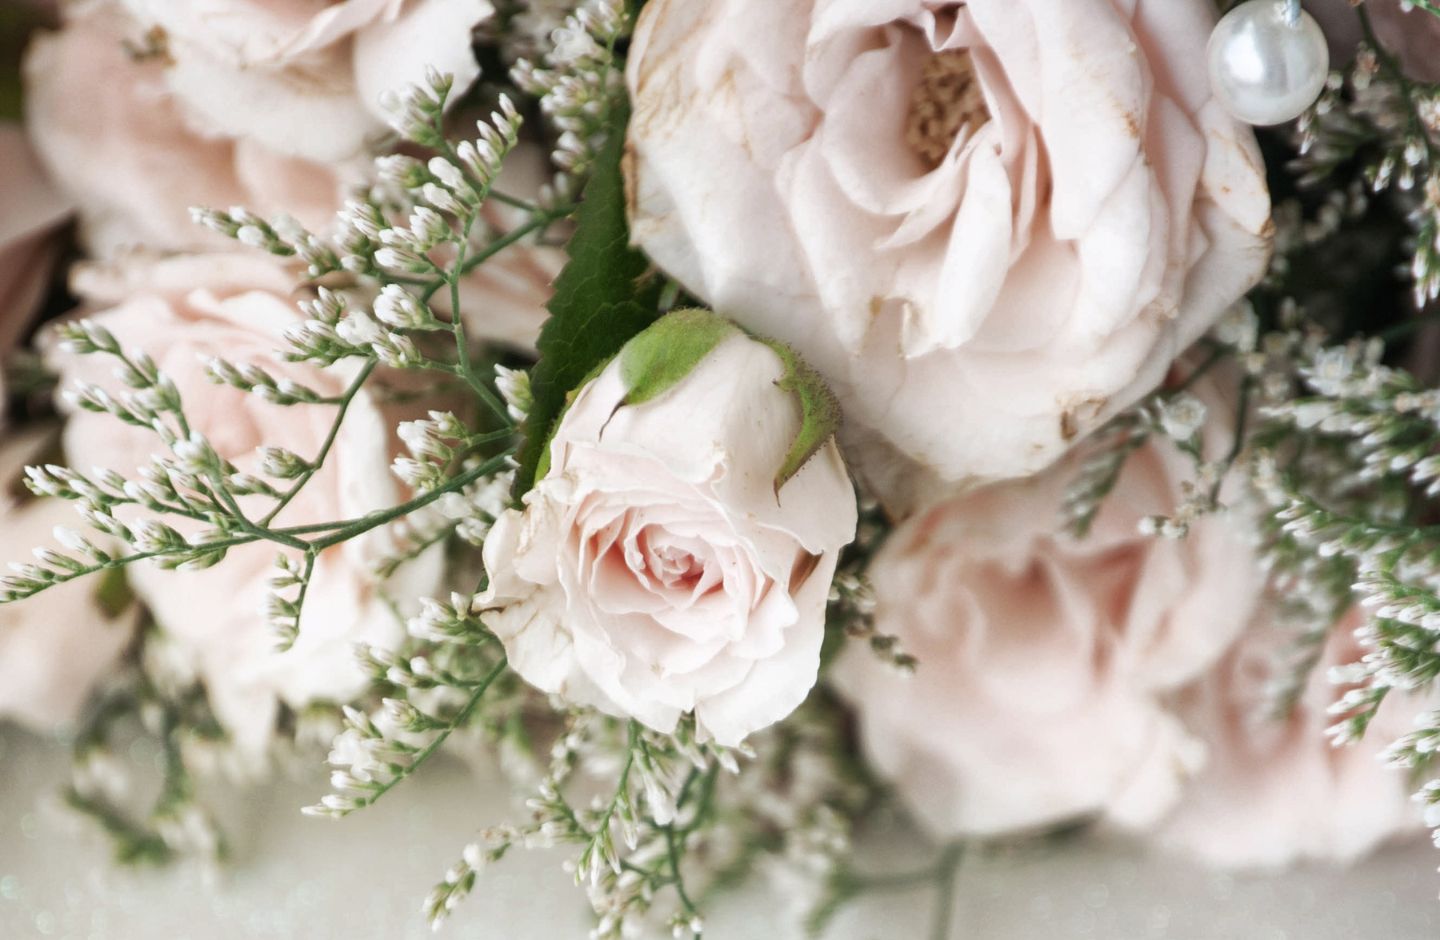 พวงหรีดดอกไม้สดจากดอกไม้สีขาวสื่อความอาลัย